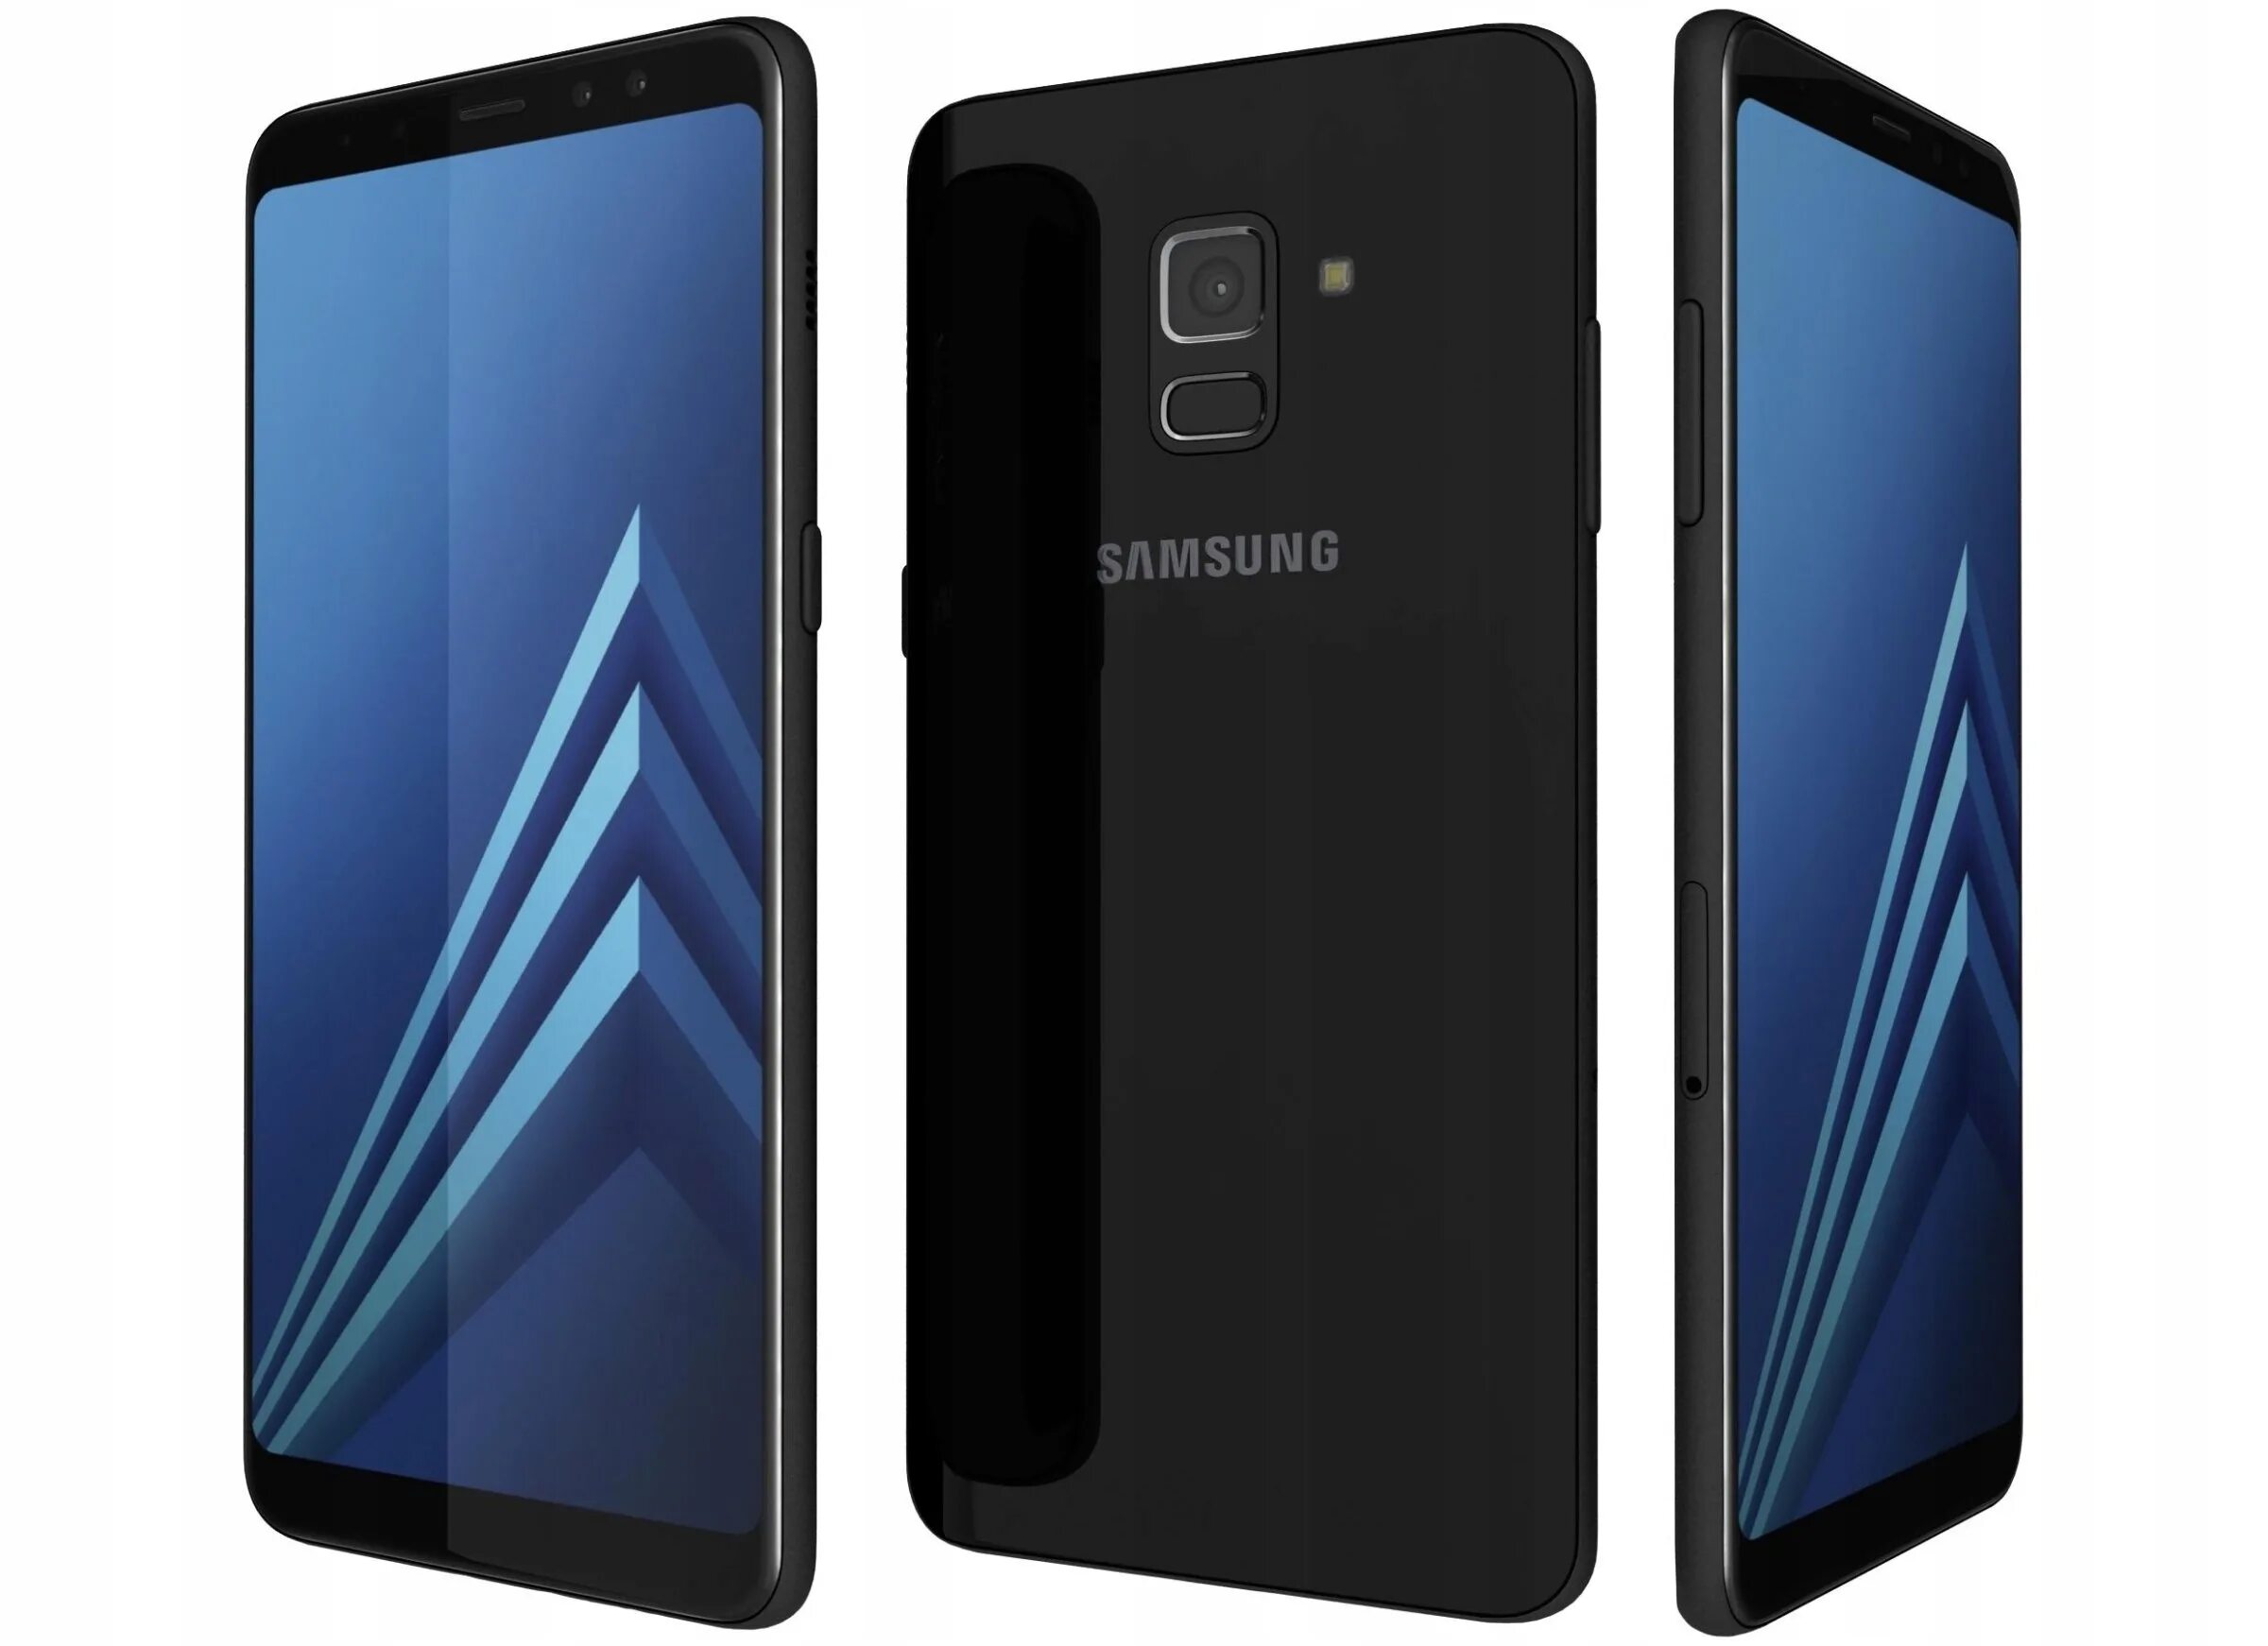 Samsung Galaxy a8 2018 Black. Samsung Galaxy a8 Plus. Samsung Galaxy a8 2018 a530f. Samsung Galaxy a8 Plus 2018.